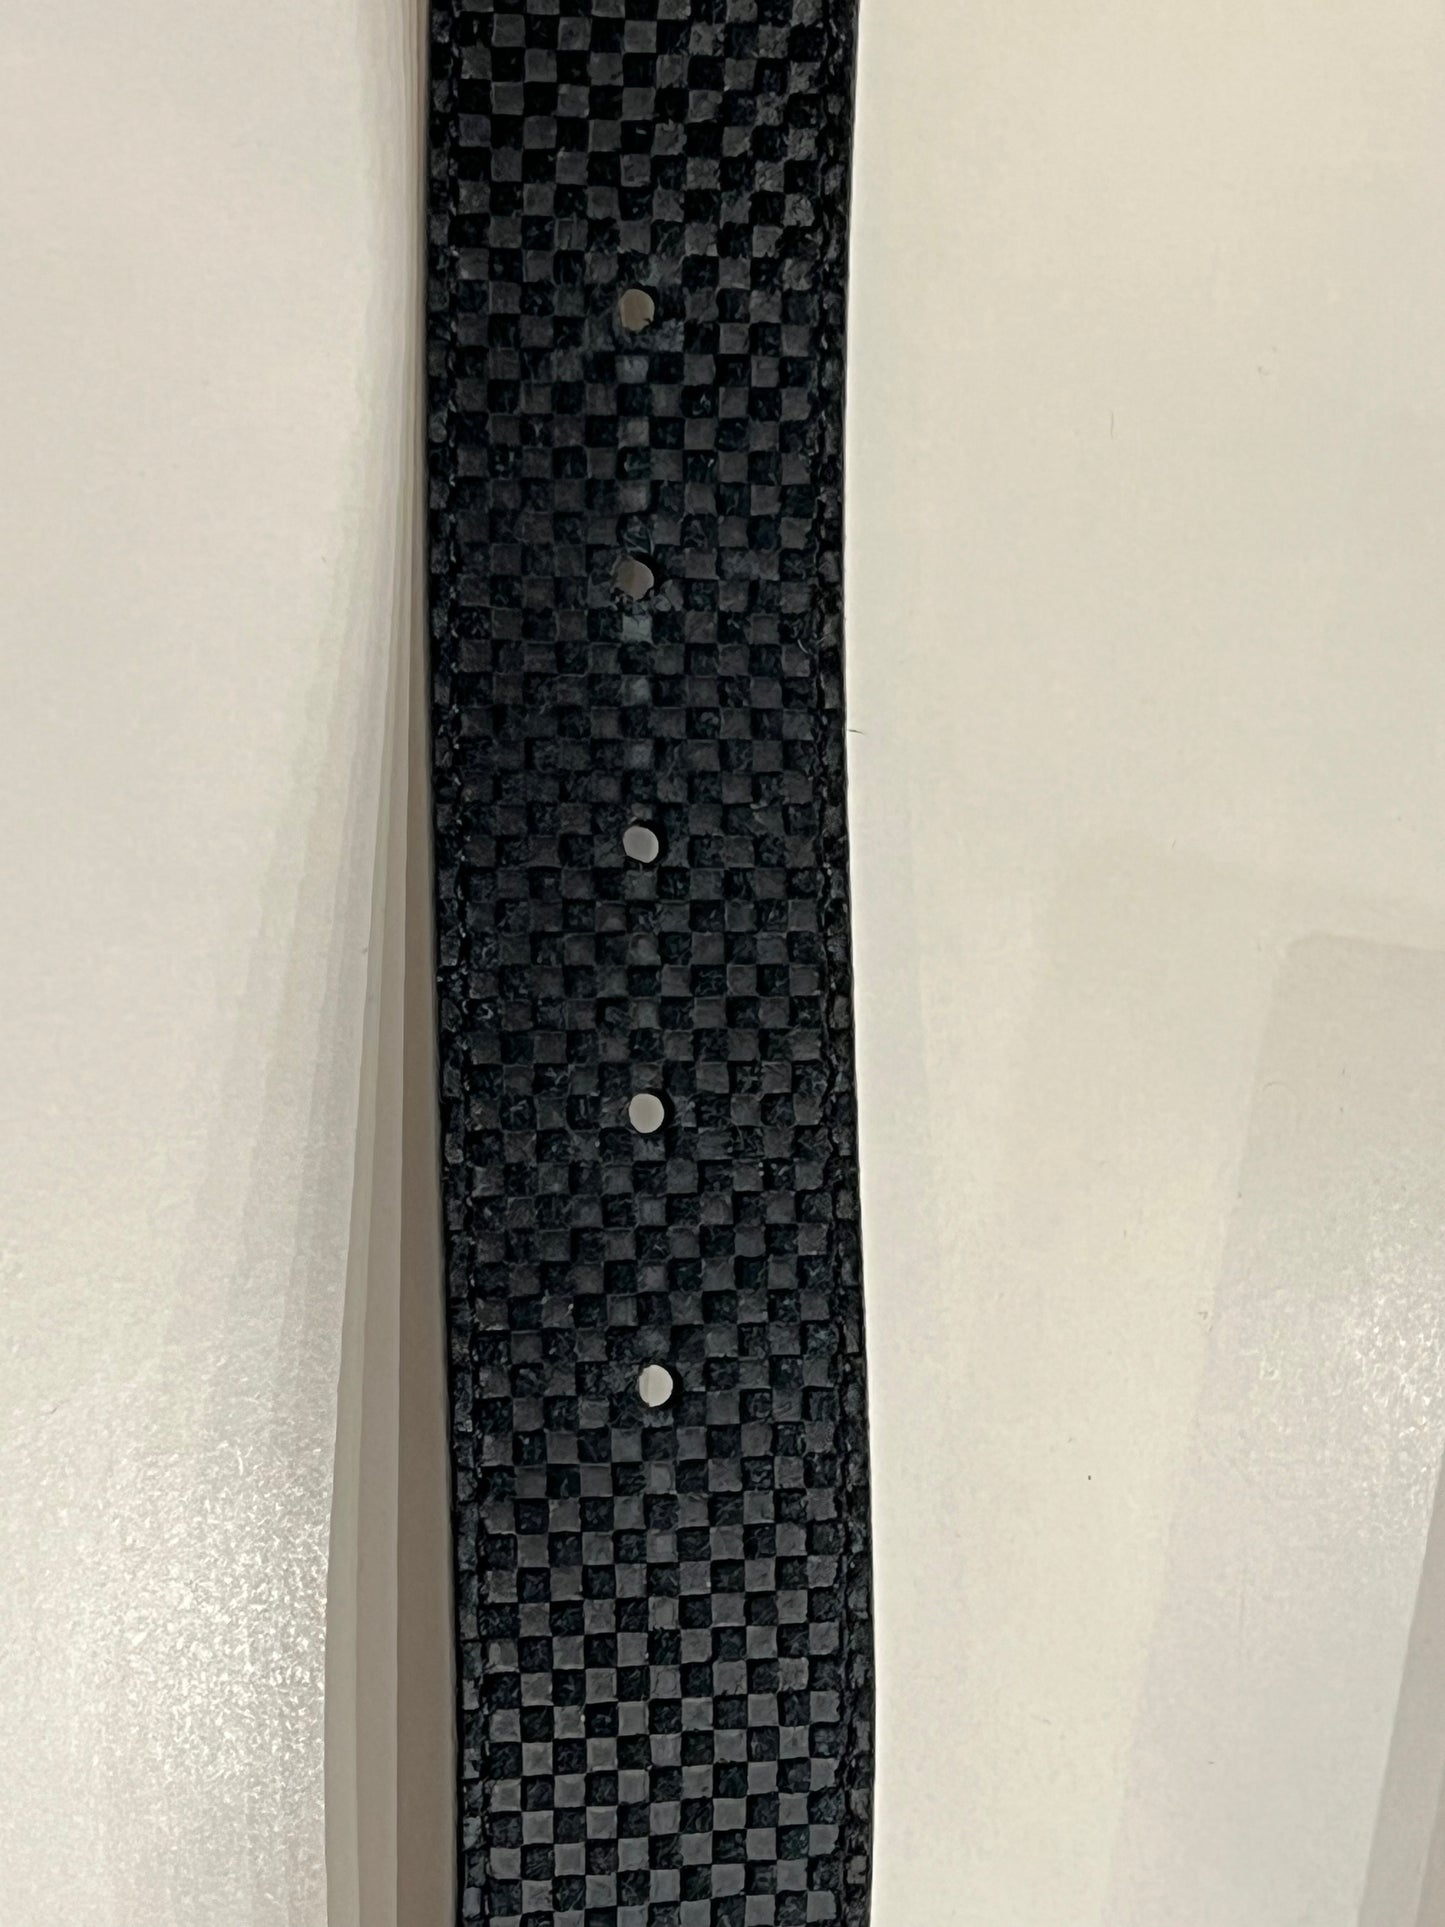 Louis Vuitton Initiales damier graphite belt